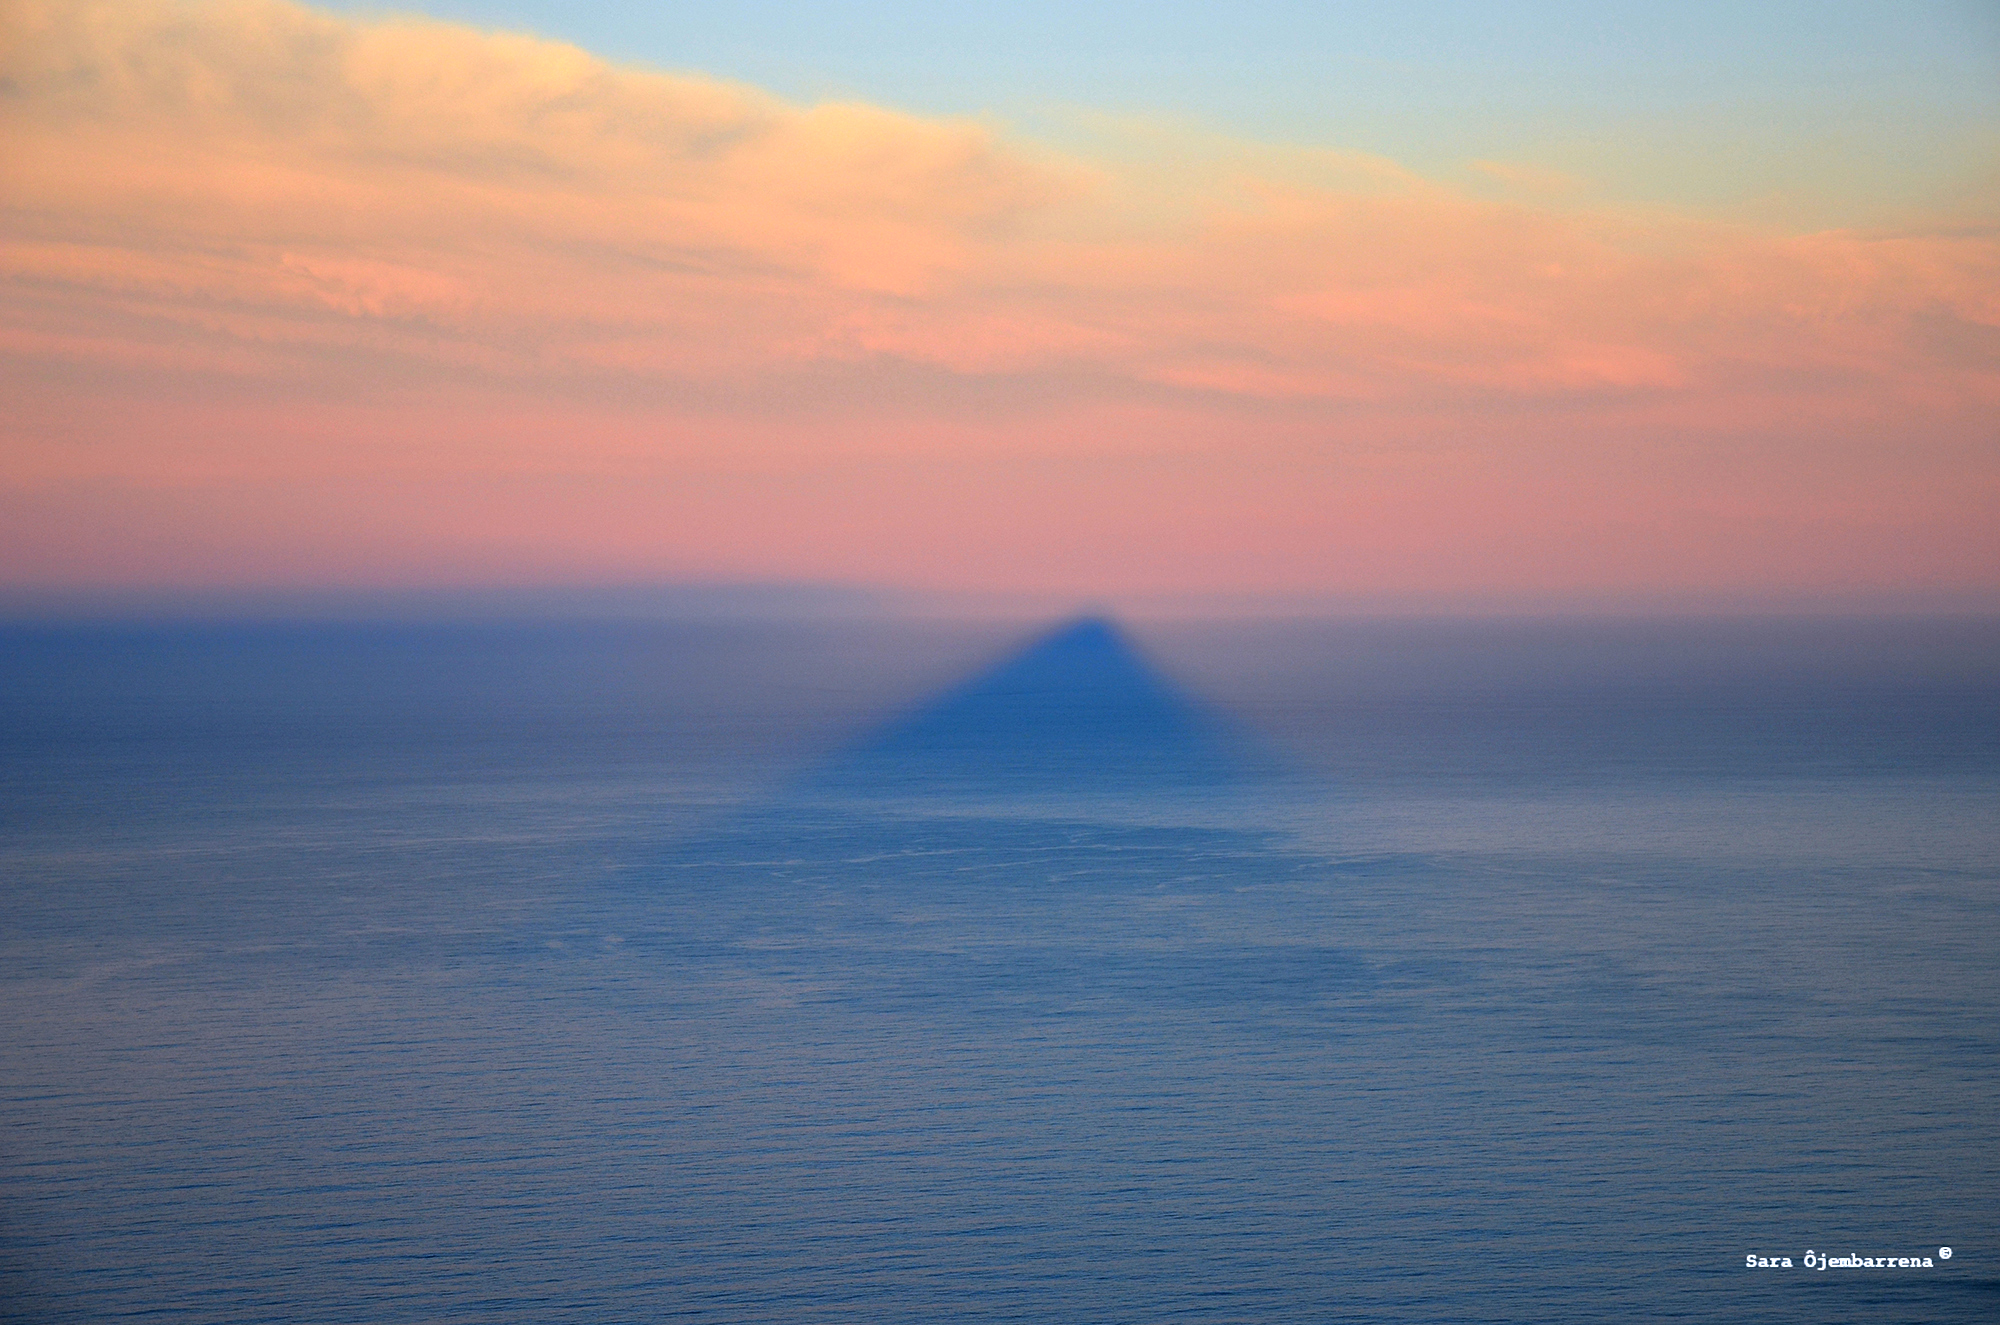 La montaña se ha vuelto mar. Sombra de la montaña Lion's Head en el Océano Atlántico. Ciudad del Cabo, Sudáfrica. Foto de Sarah Ojembarrena.